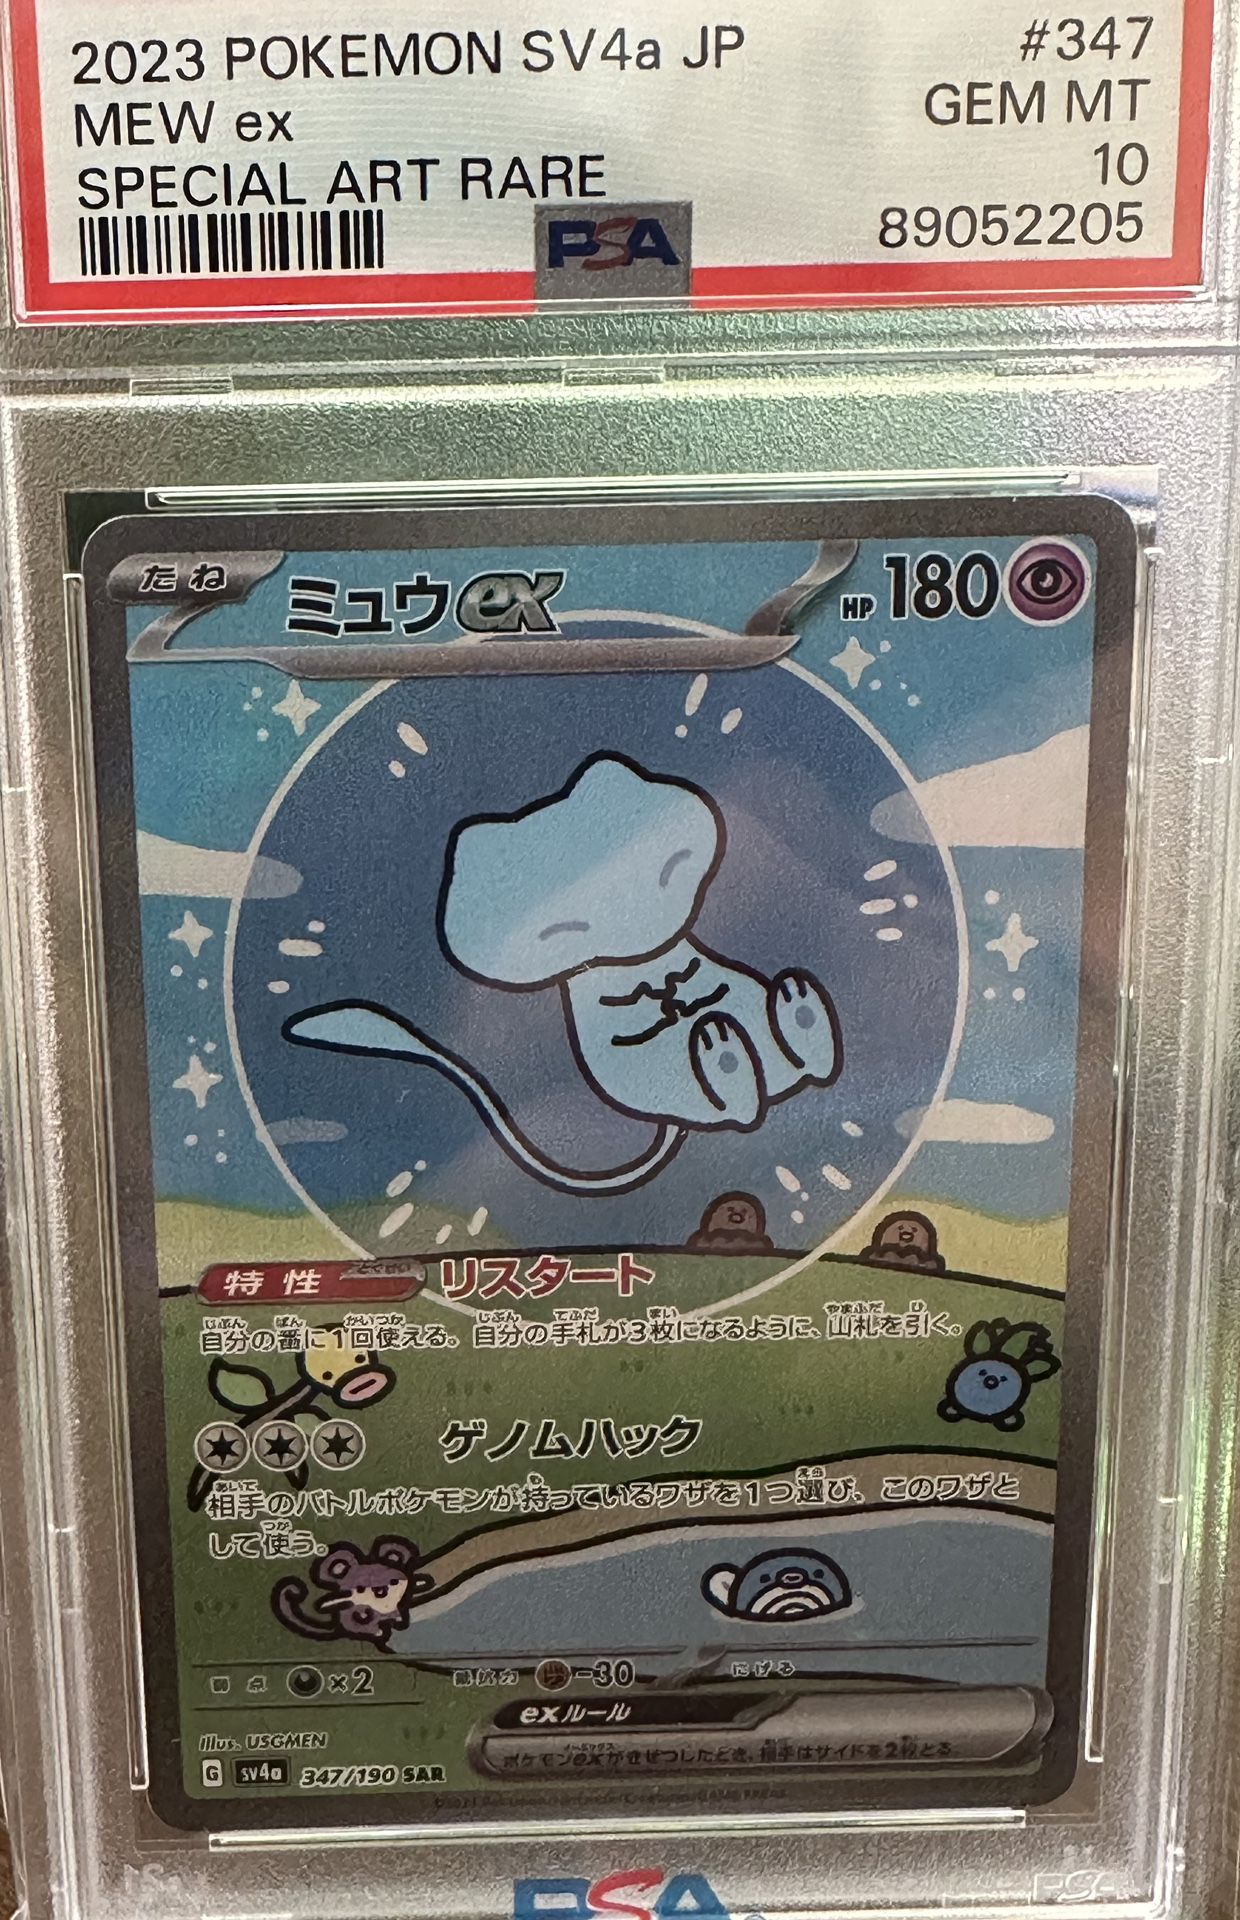 2023 Pokémon Mew Ex Graded Card